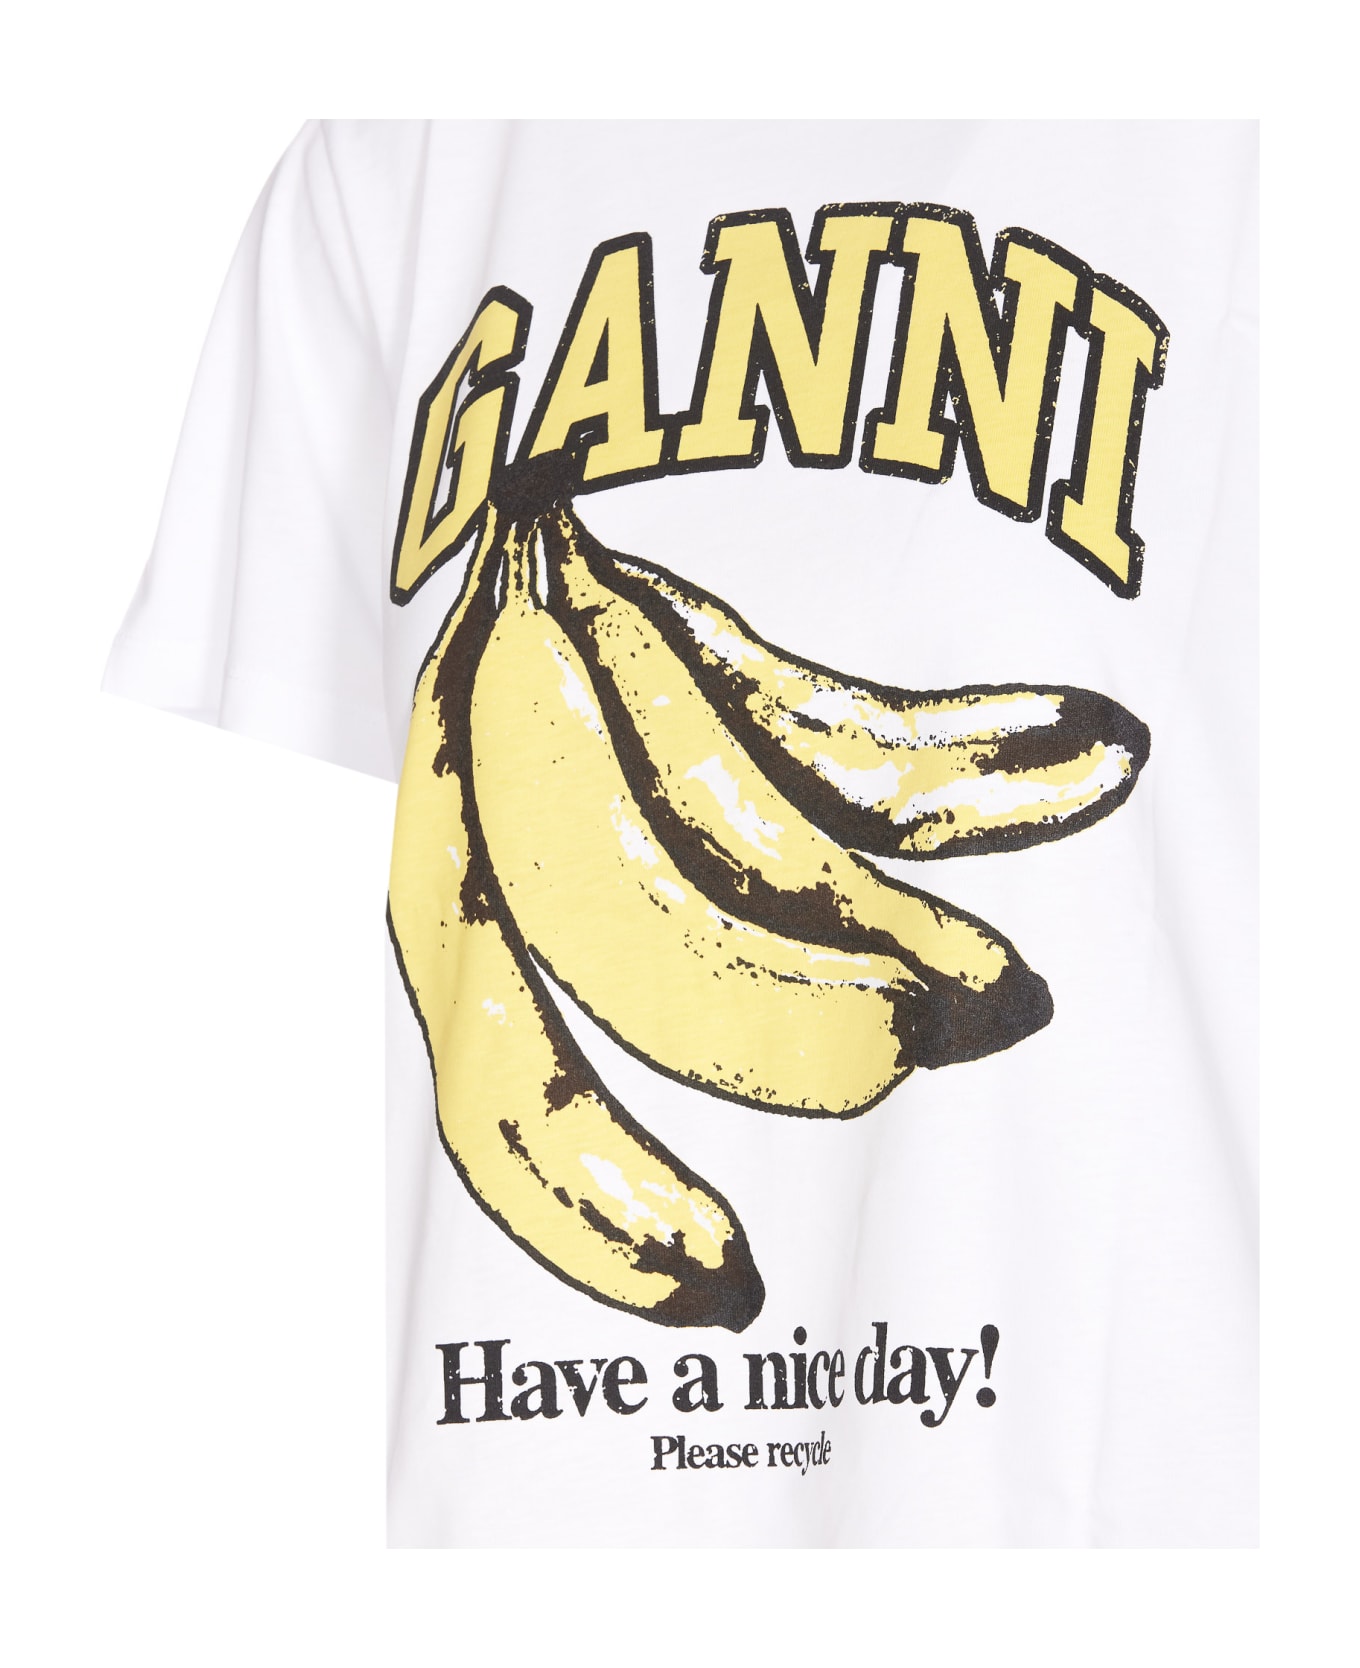 Ganni Banana T-shirt - White Tシャツ